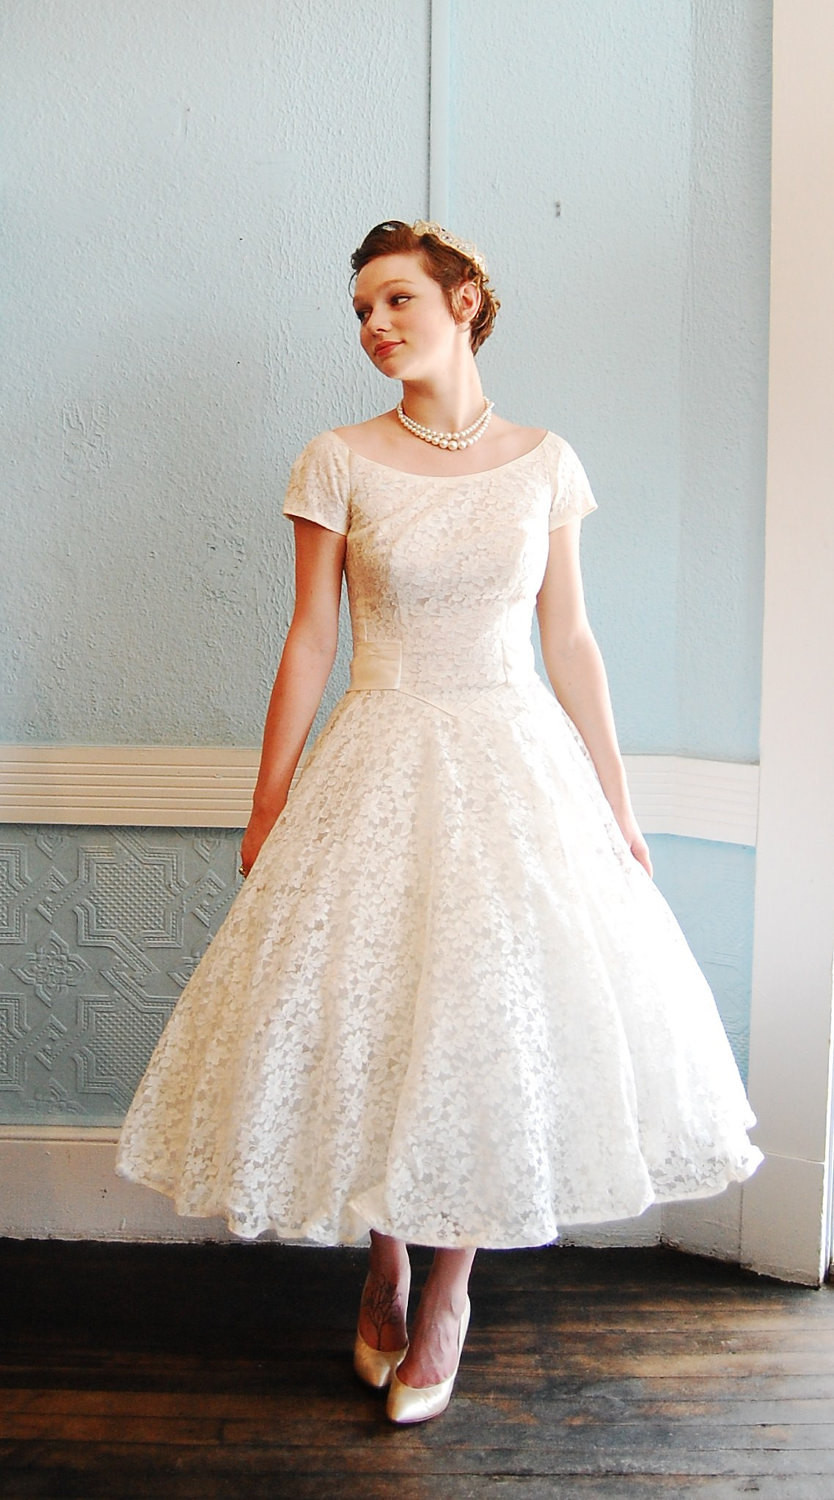 Etsy Wedding Dress
 Inspired by Kelly Wedding dresses on Etsy 2